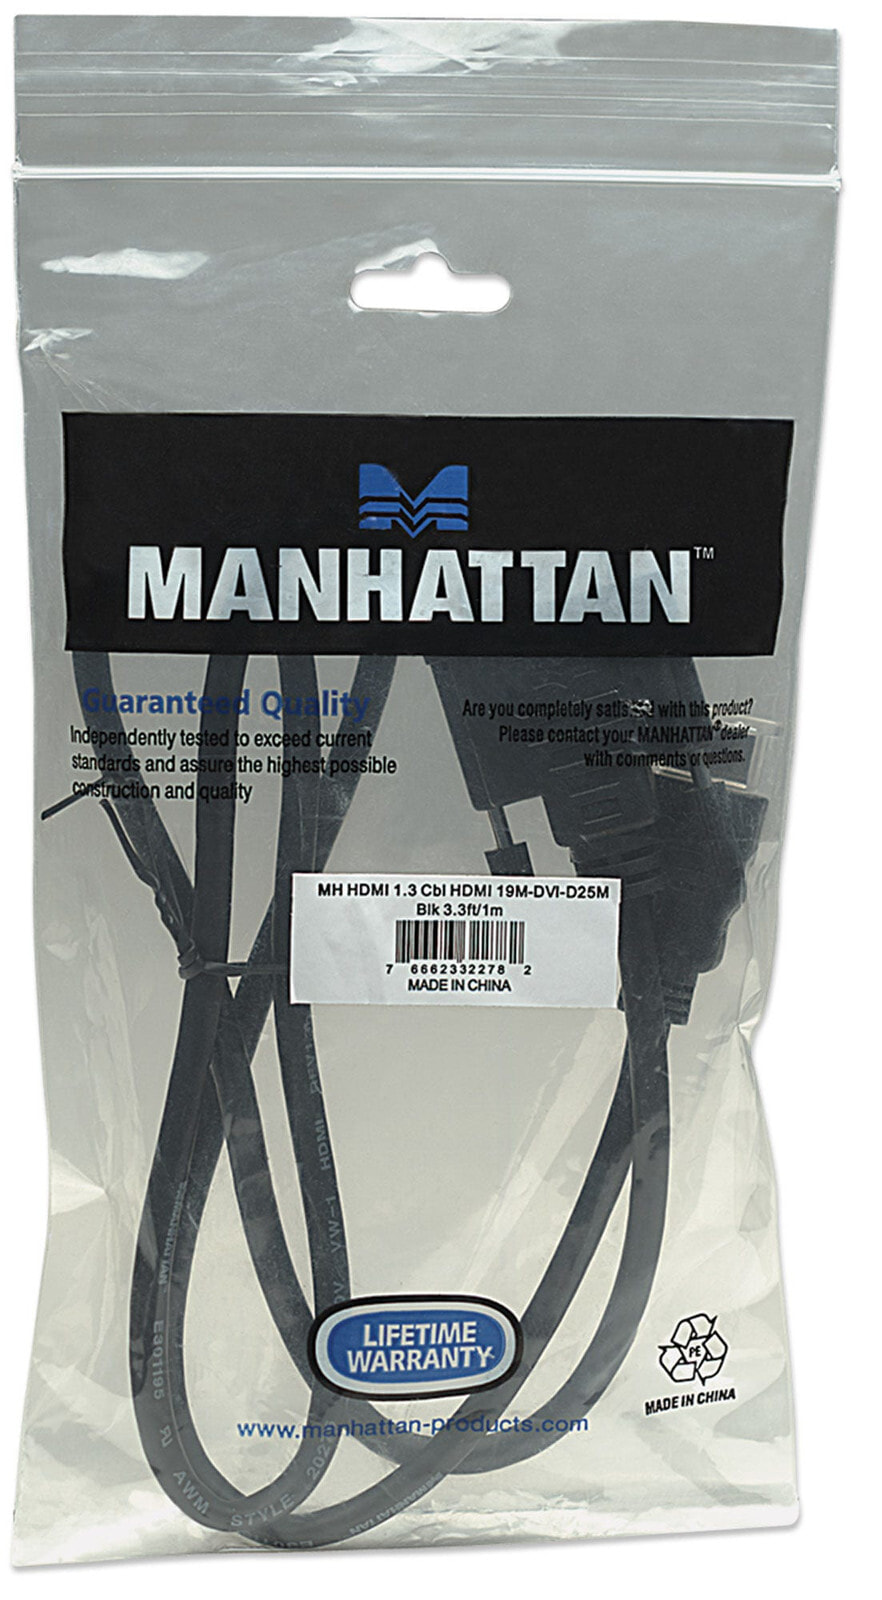 Manhattan 322782 видео кабель адаптер 1 m HDMI DVI-D Черный